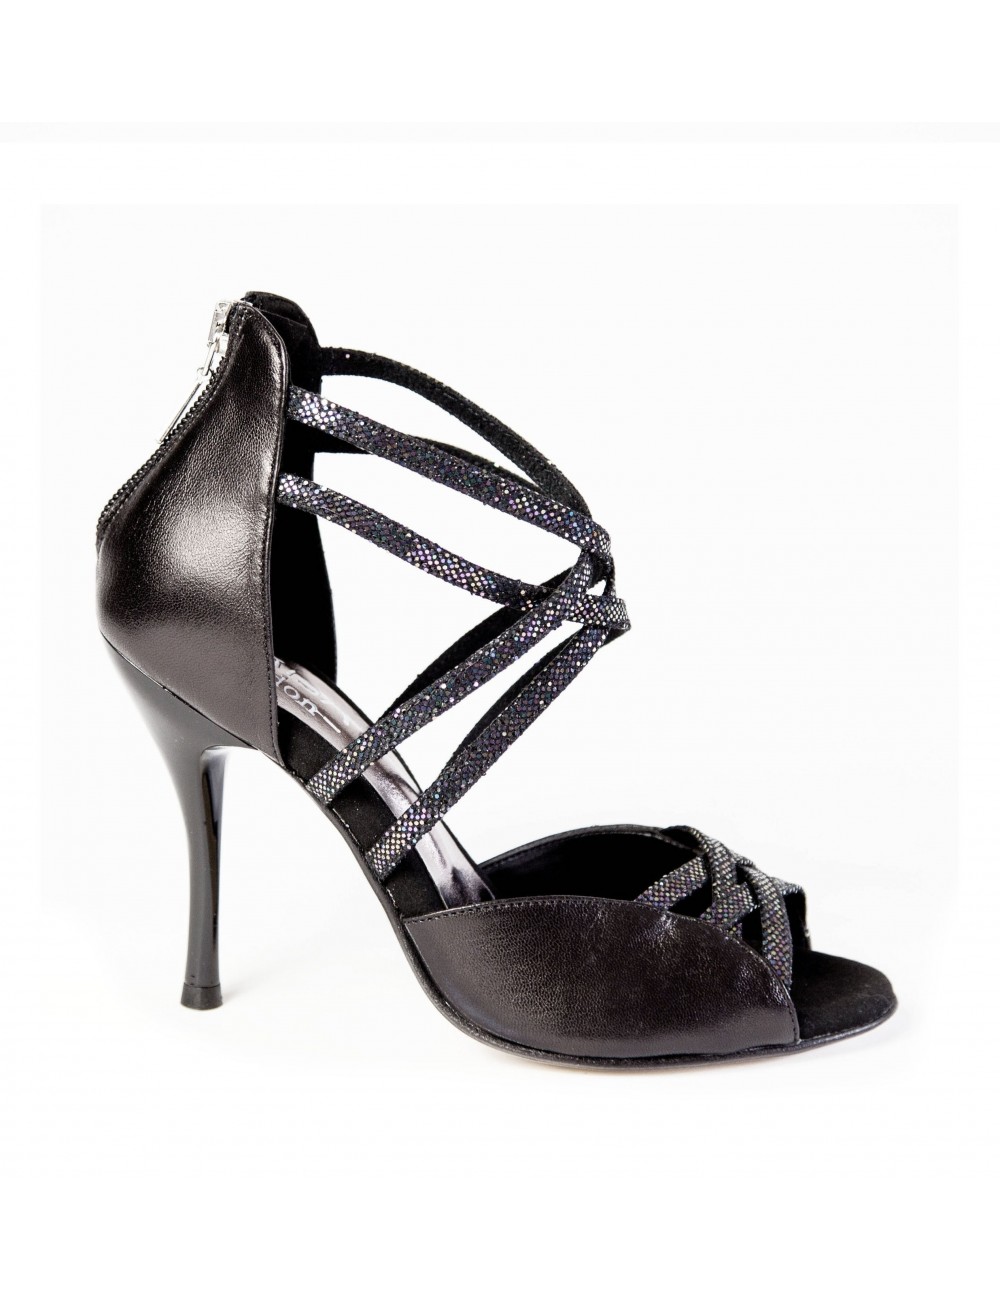 Zapatos de Salón Mujer Elegantes Cómodo Negro Brillante 8 CM Piel